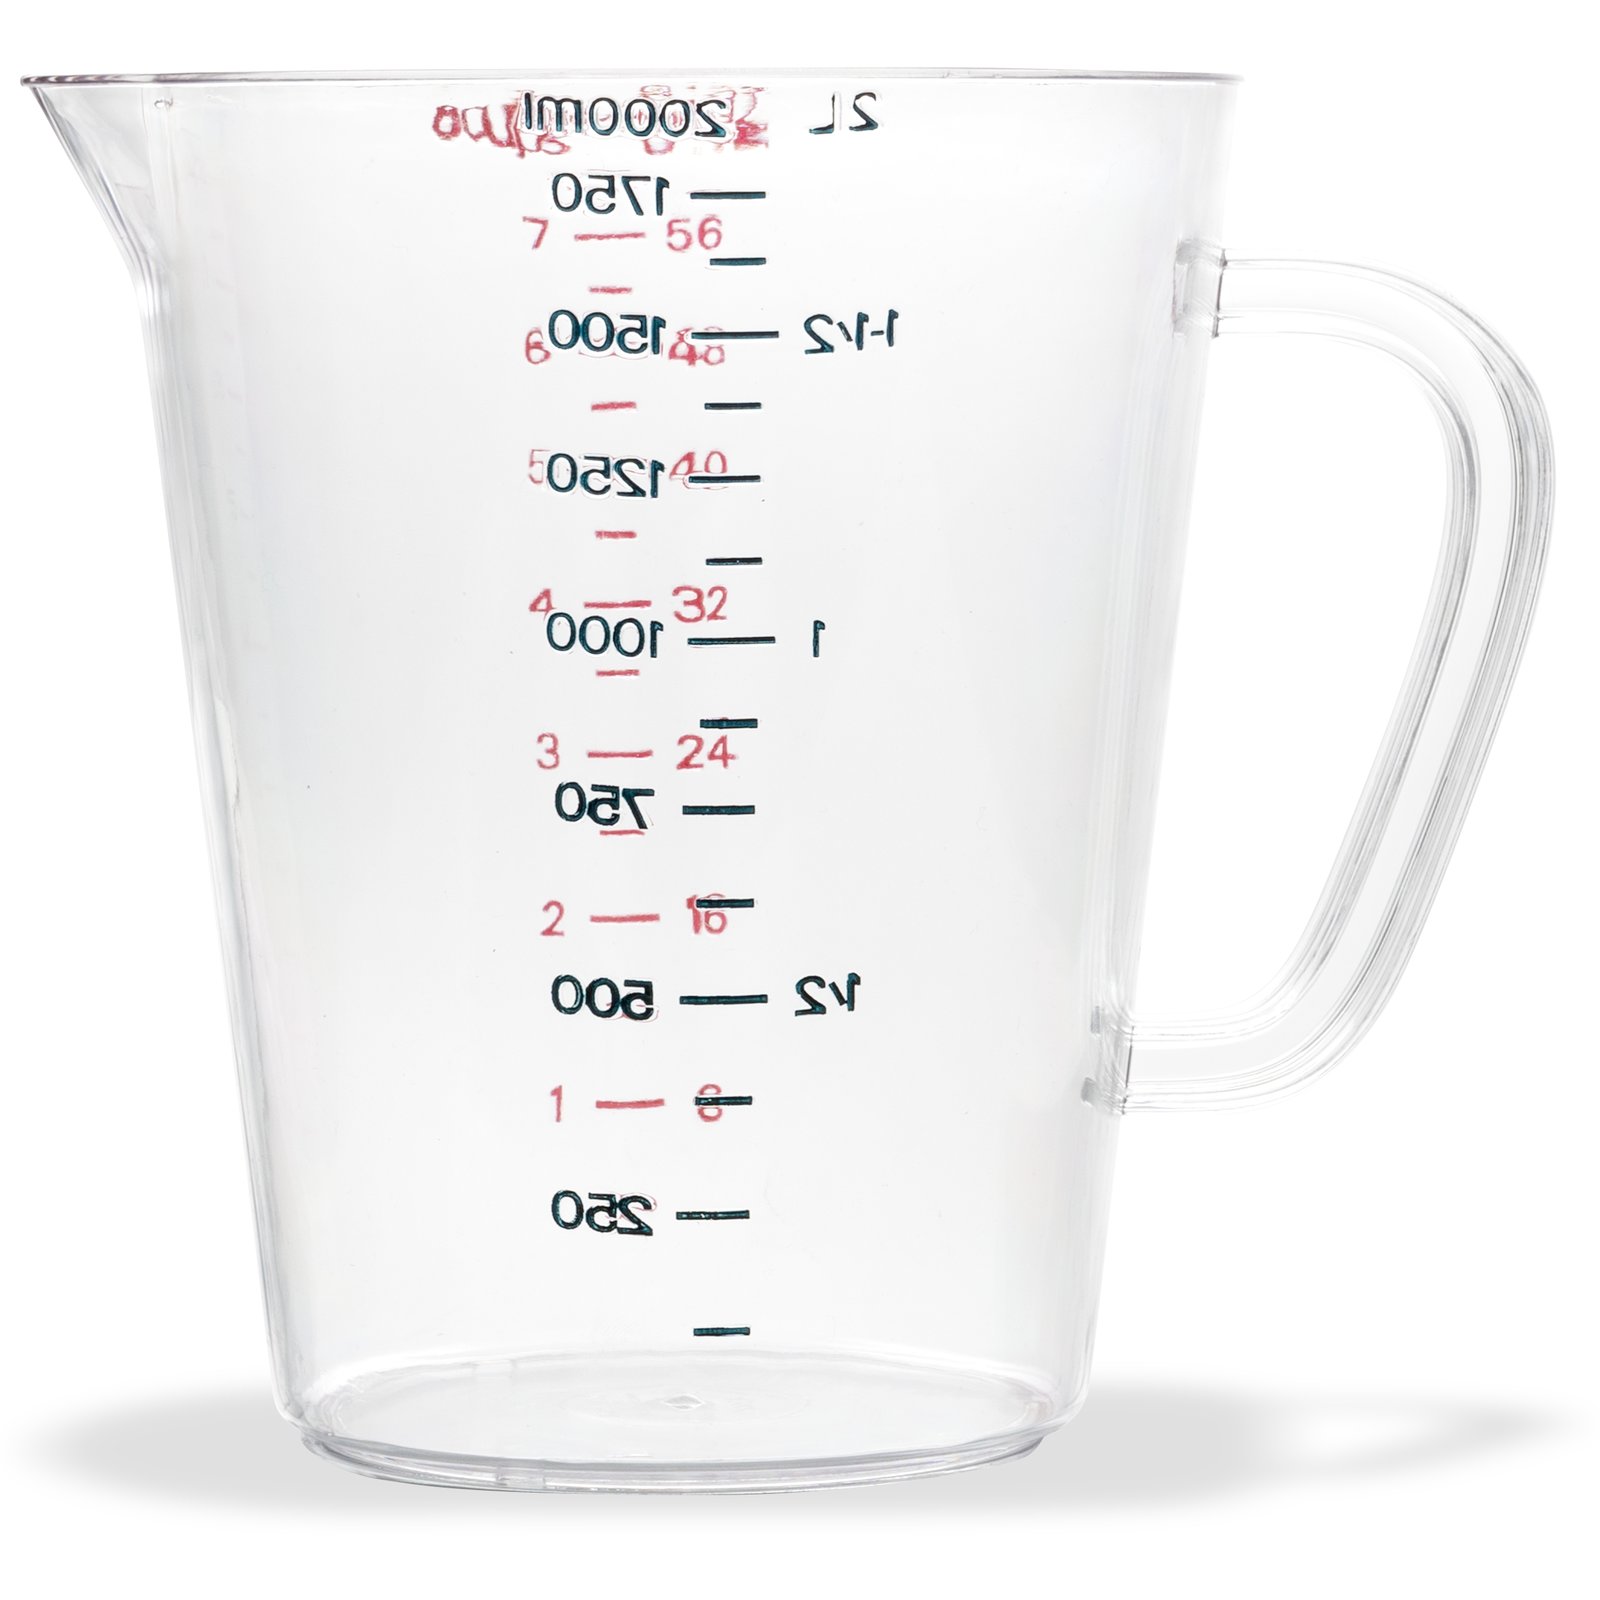 Flea Market Measuring Cup Set (1 Cup,1/2 Cup,1/3 Cup,1/4 Cup) by